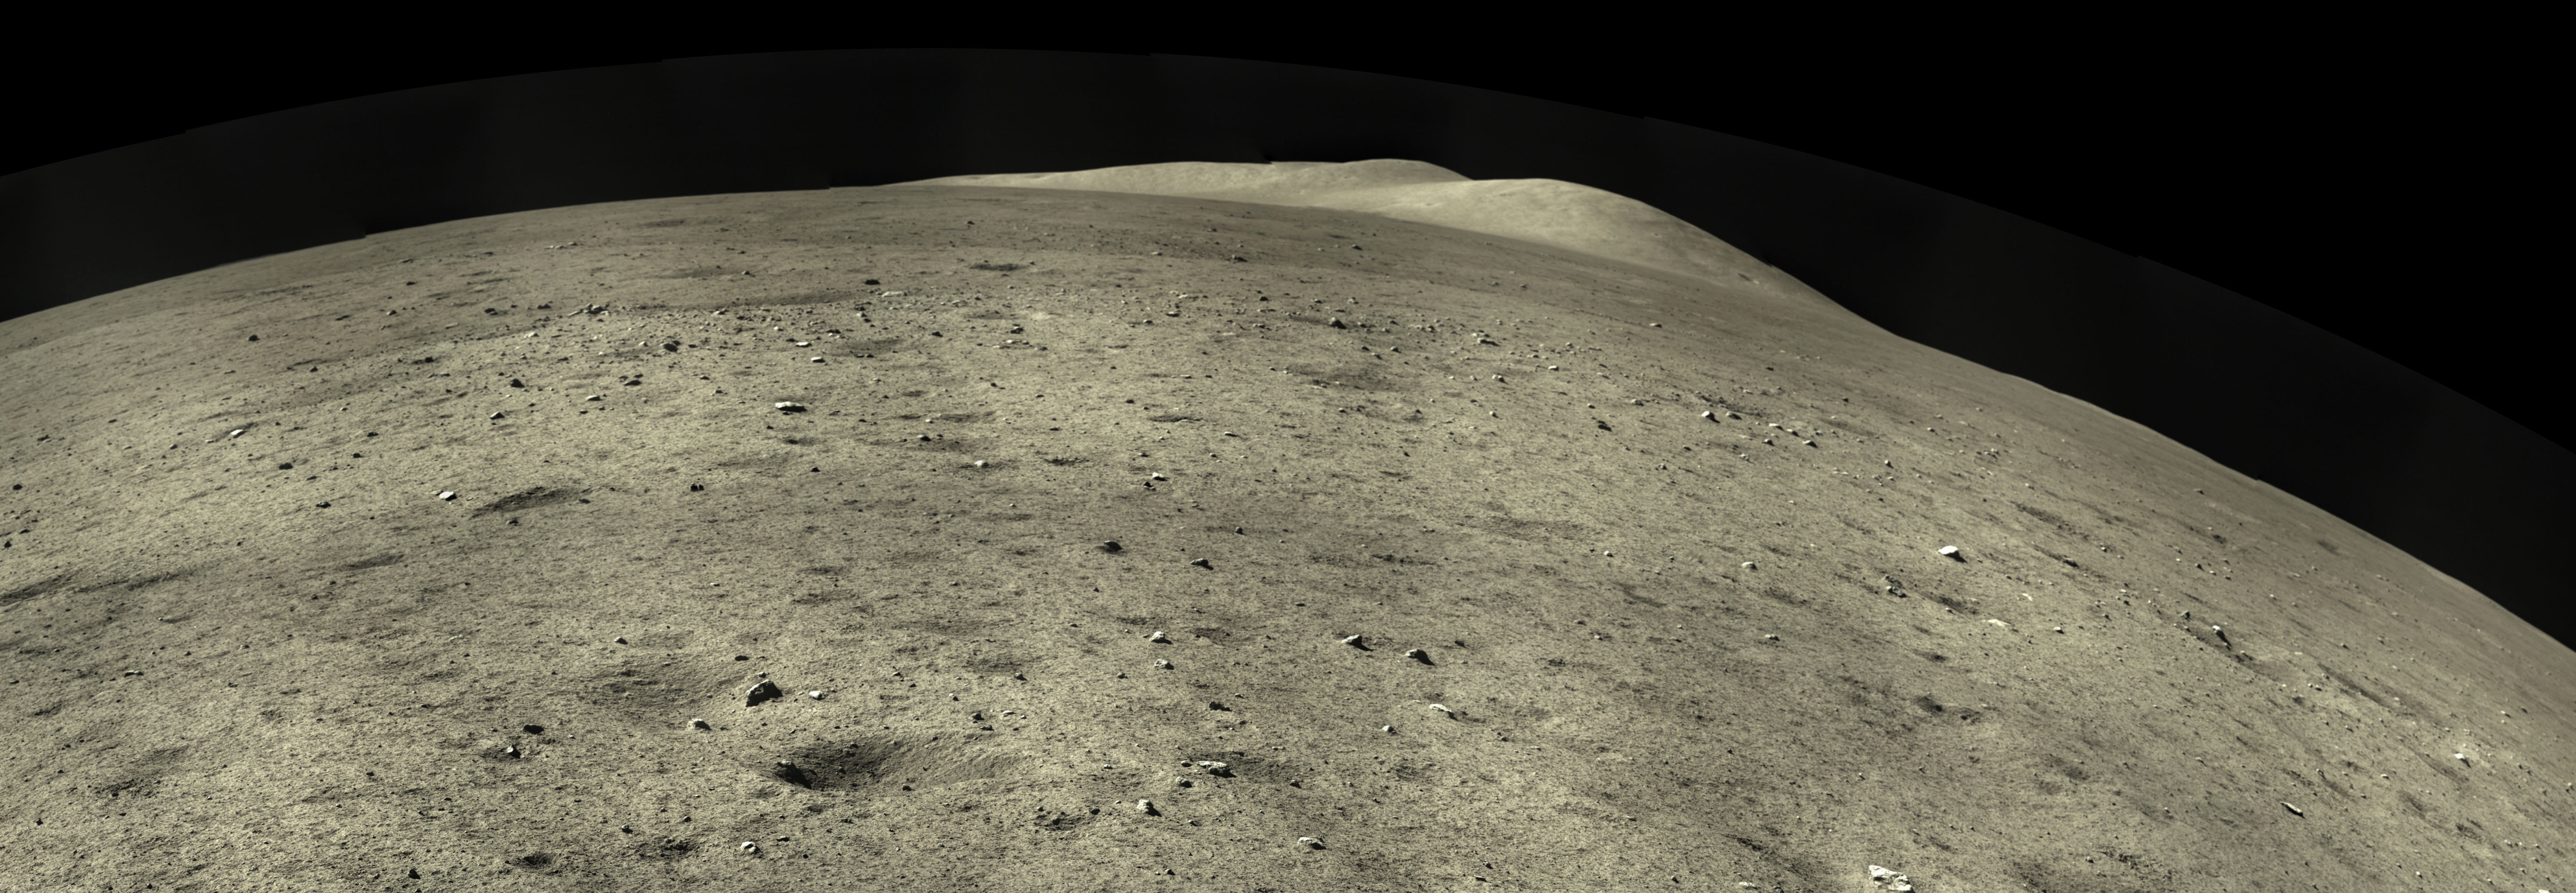 Détail du panorama capturé par Chang'e 5 après son atterrissage réussi sur la Lune. © CNSA